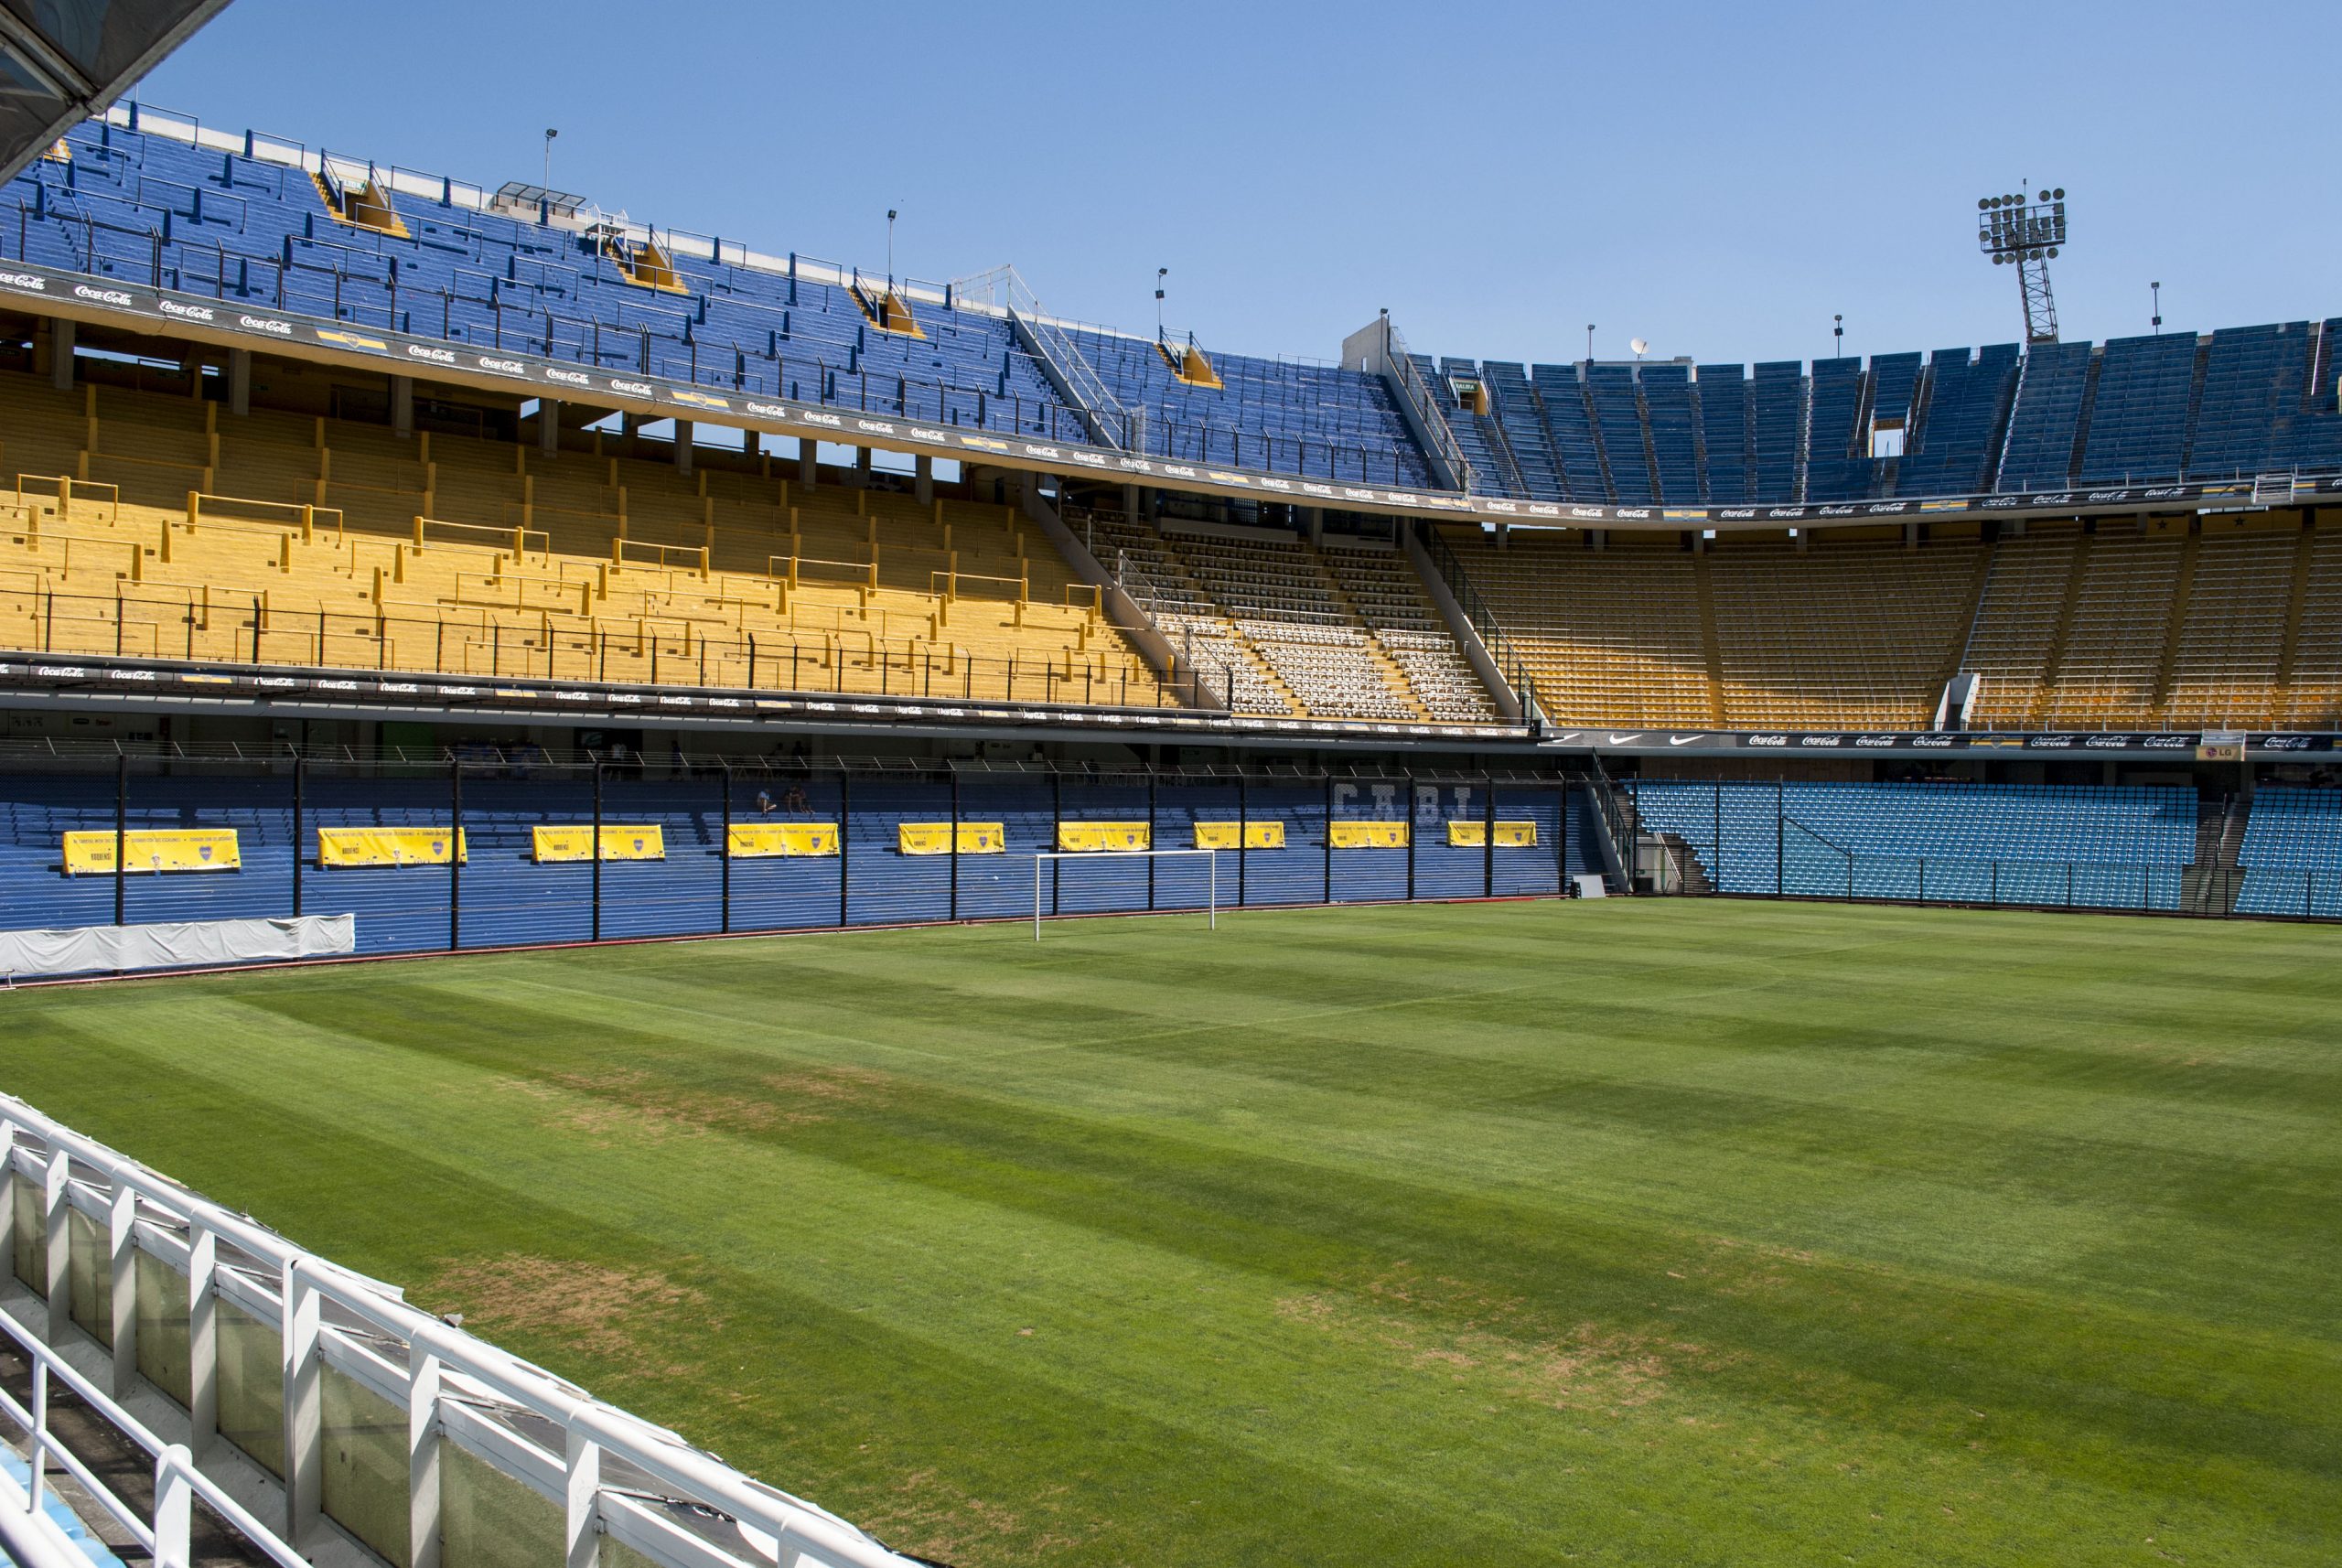 Estadio de Fútbol La Bombonera, Buenos Aires, Argentina